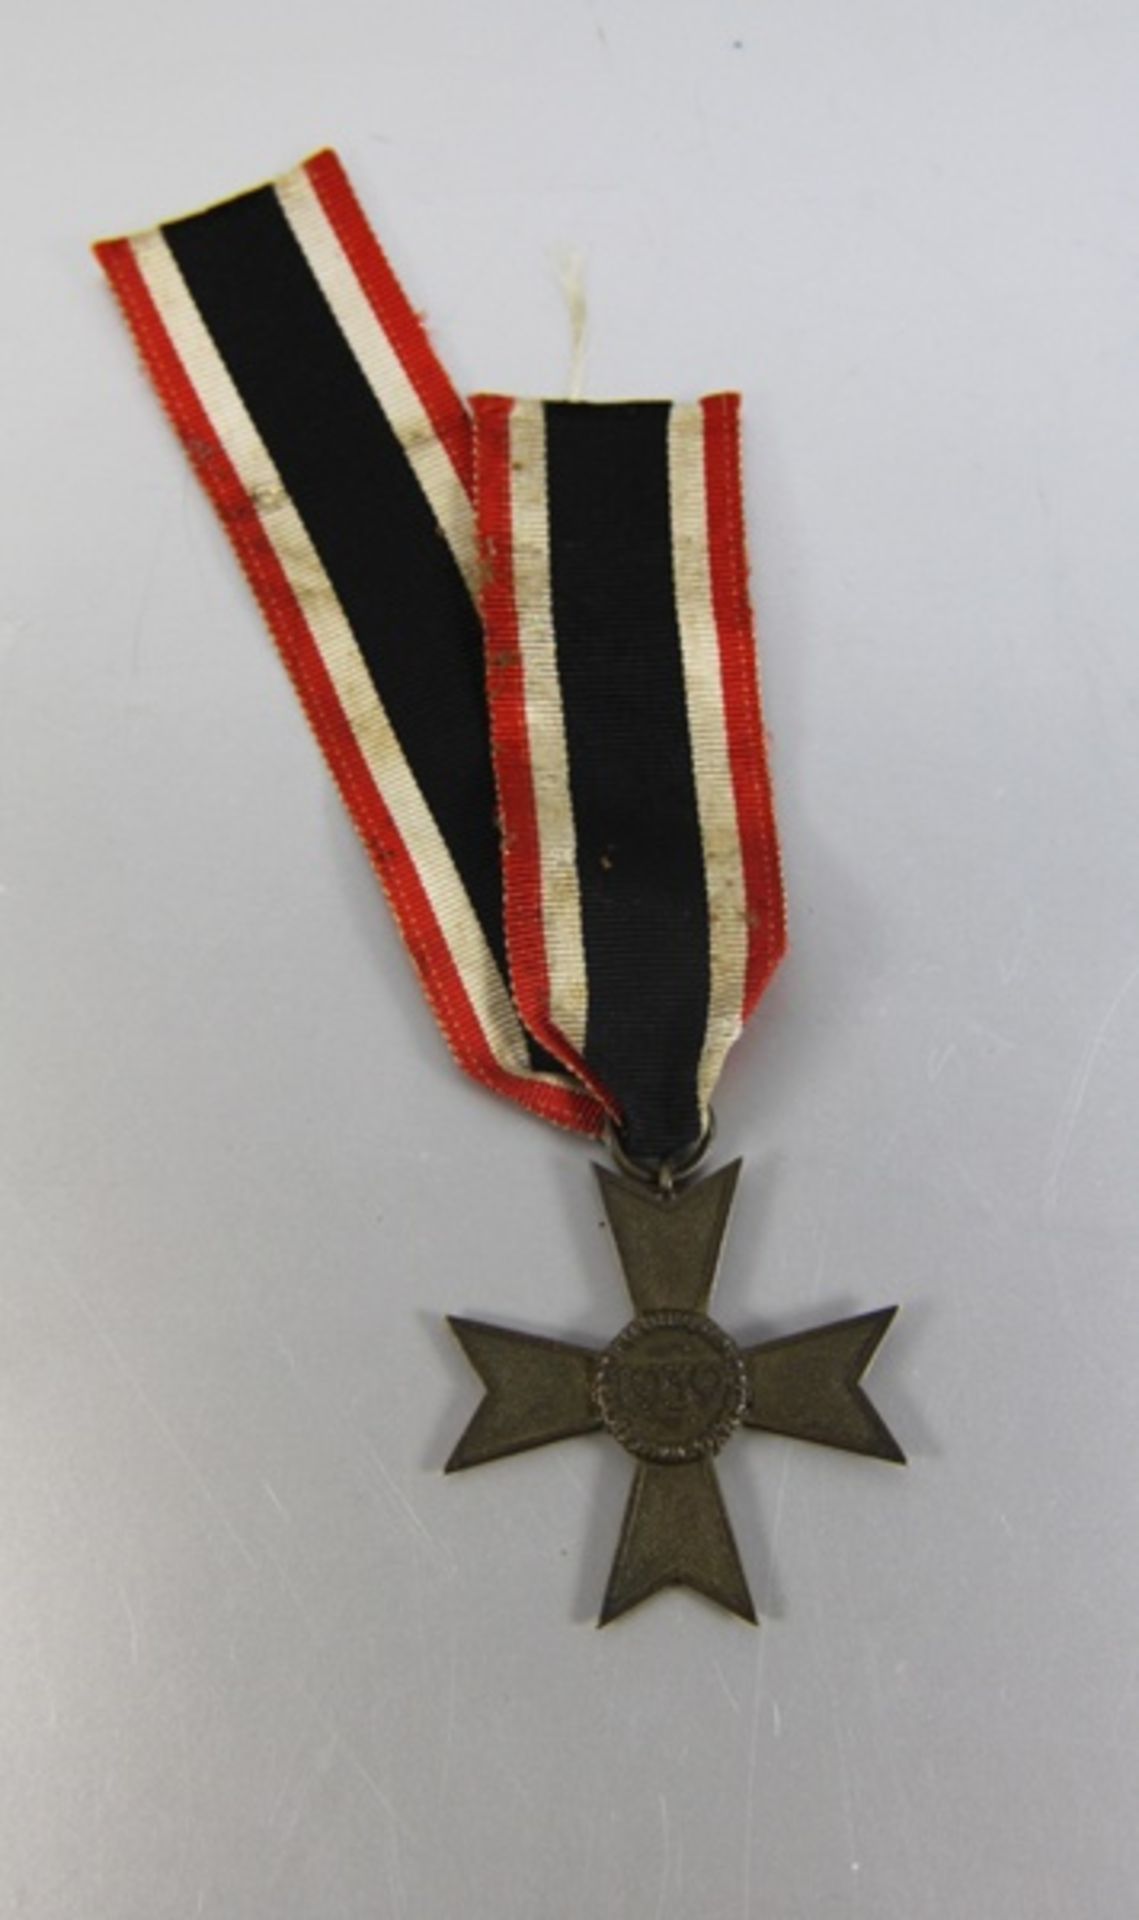 KriegsverdienstkreuzKriegsverdienstkreuz 2. Klasse ohne Schwerter, datiert 1939, mit Band, dieses